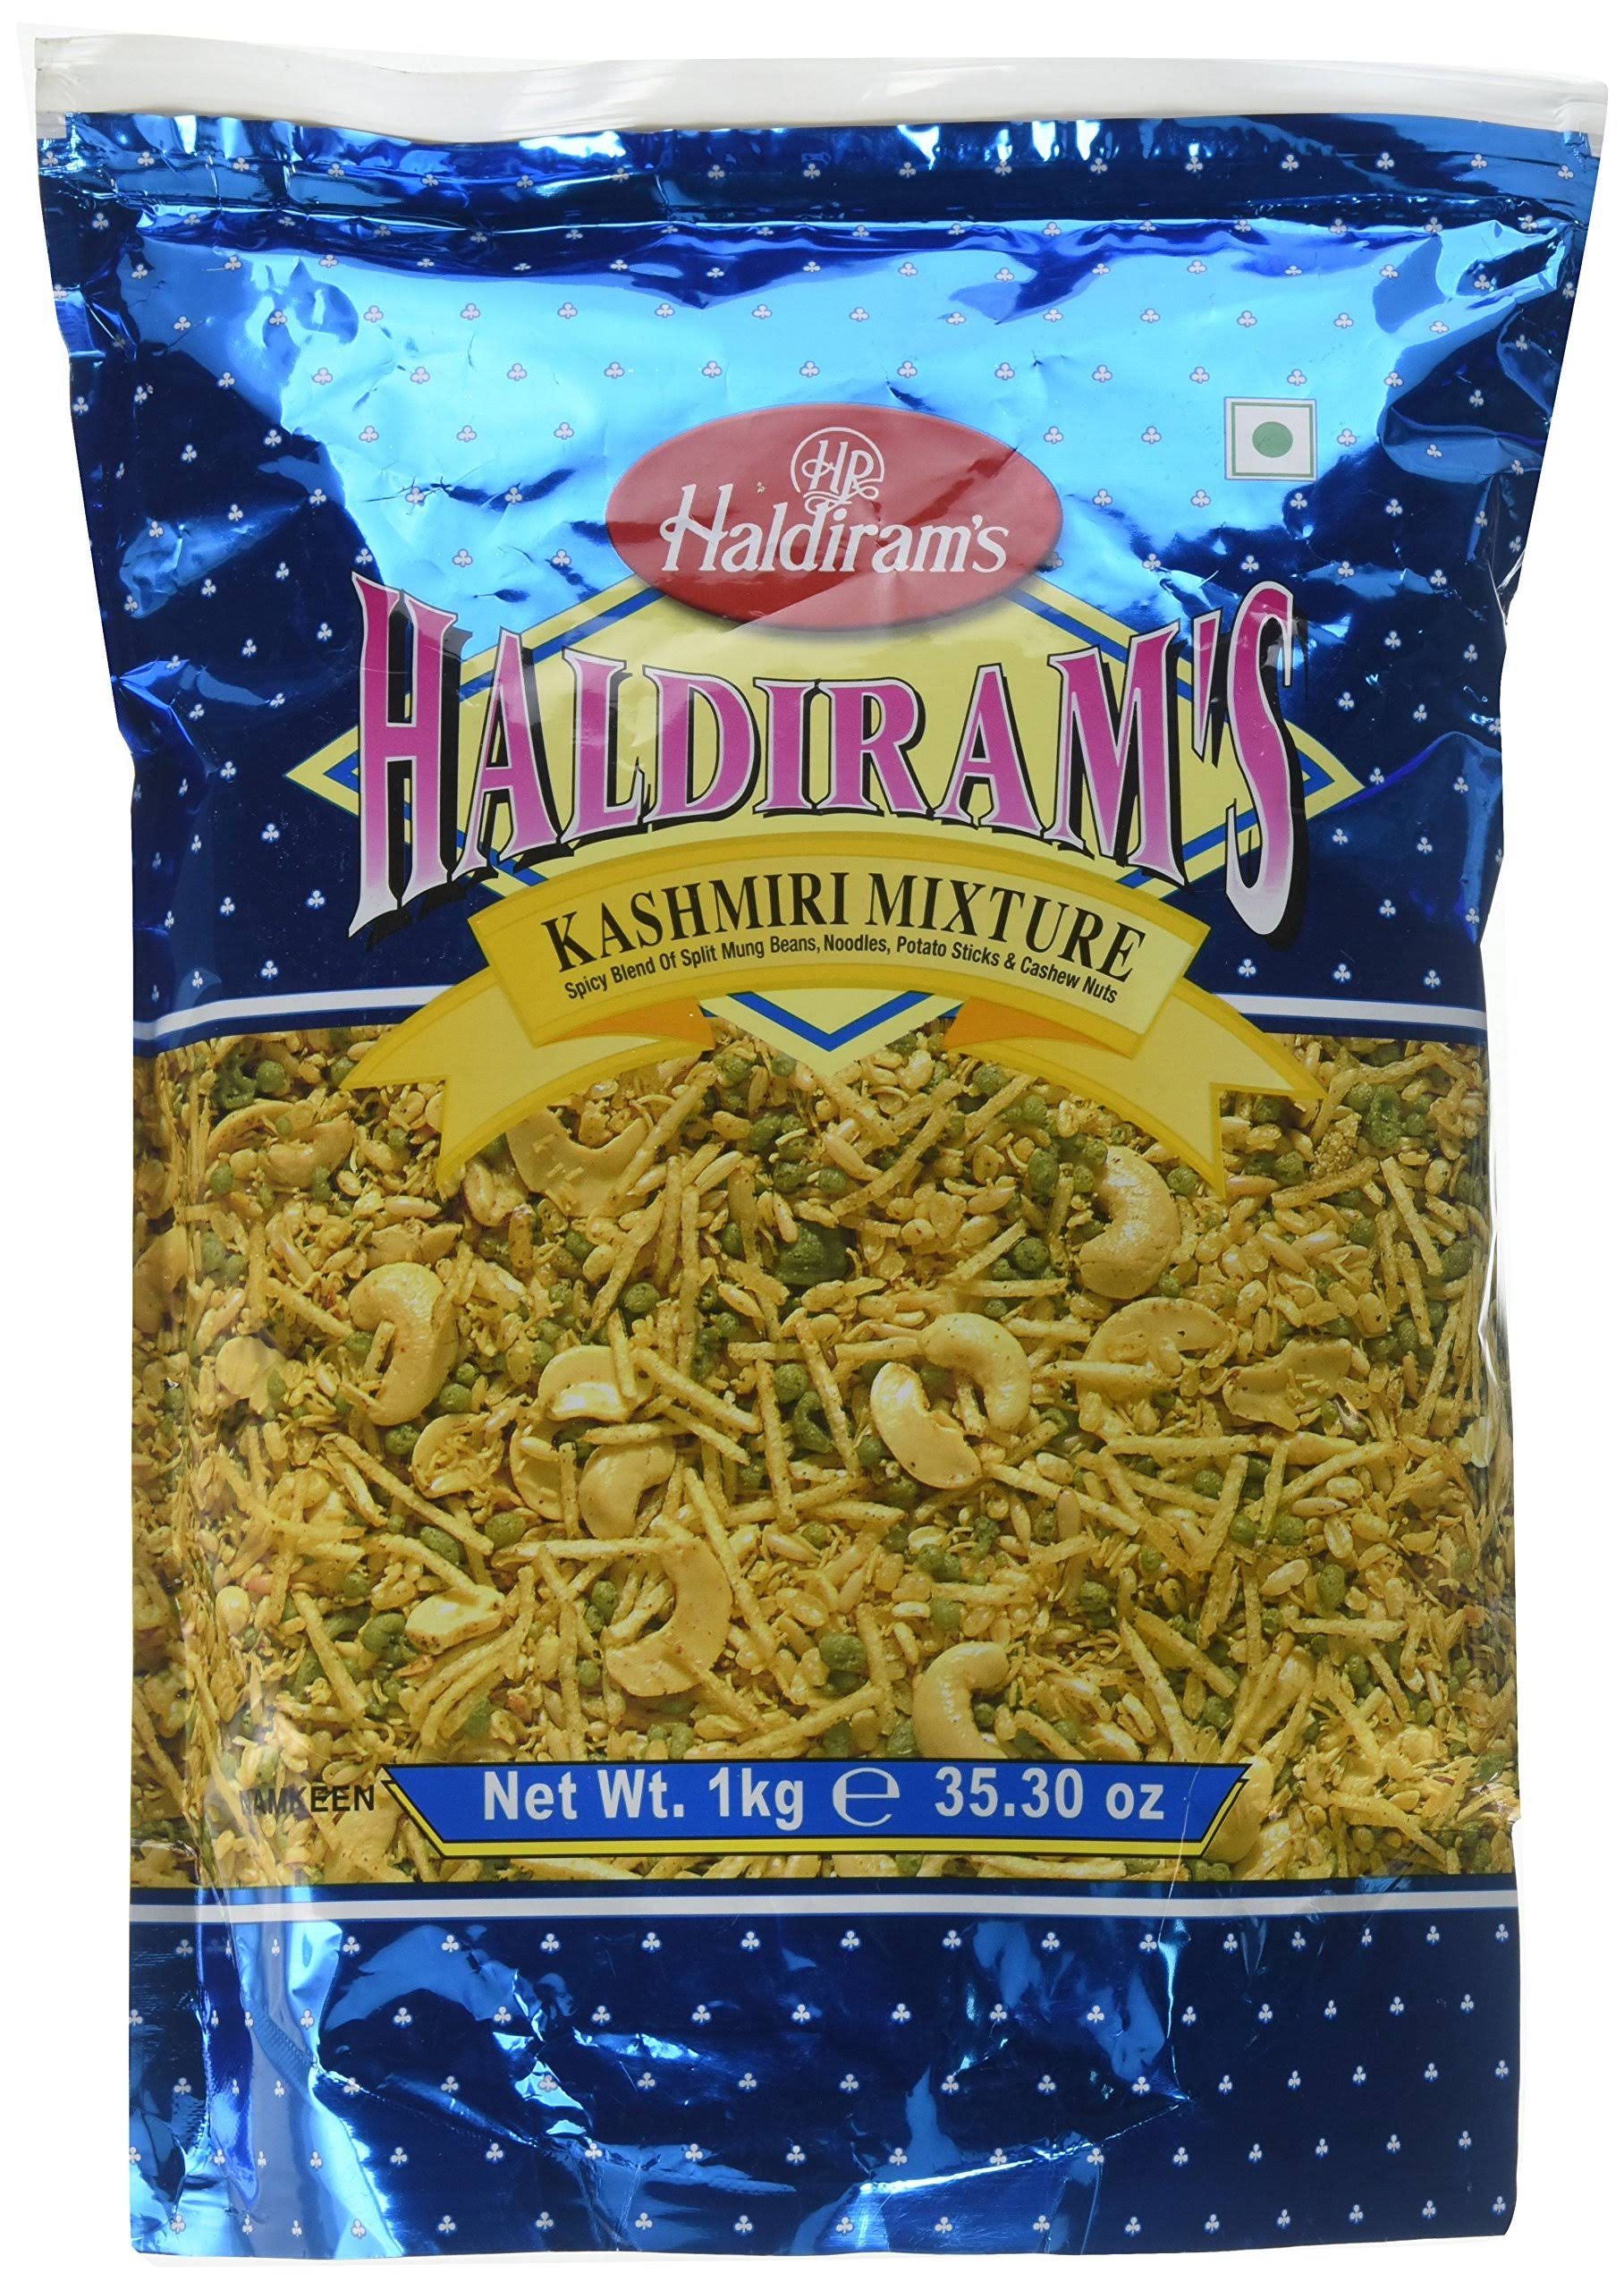 Haldiram's Kashmiri Mixture - 1 kg